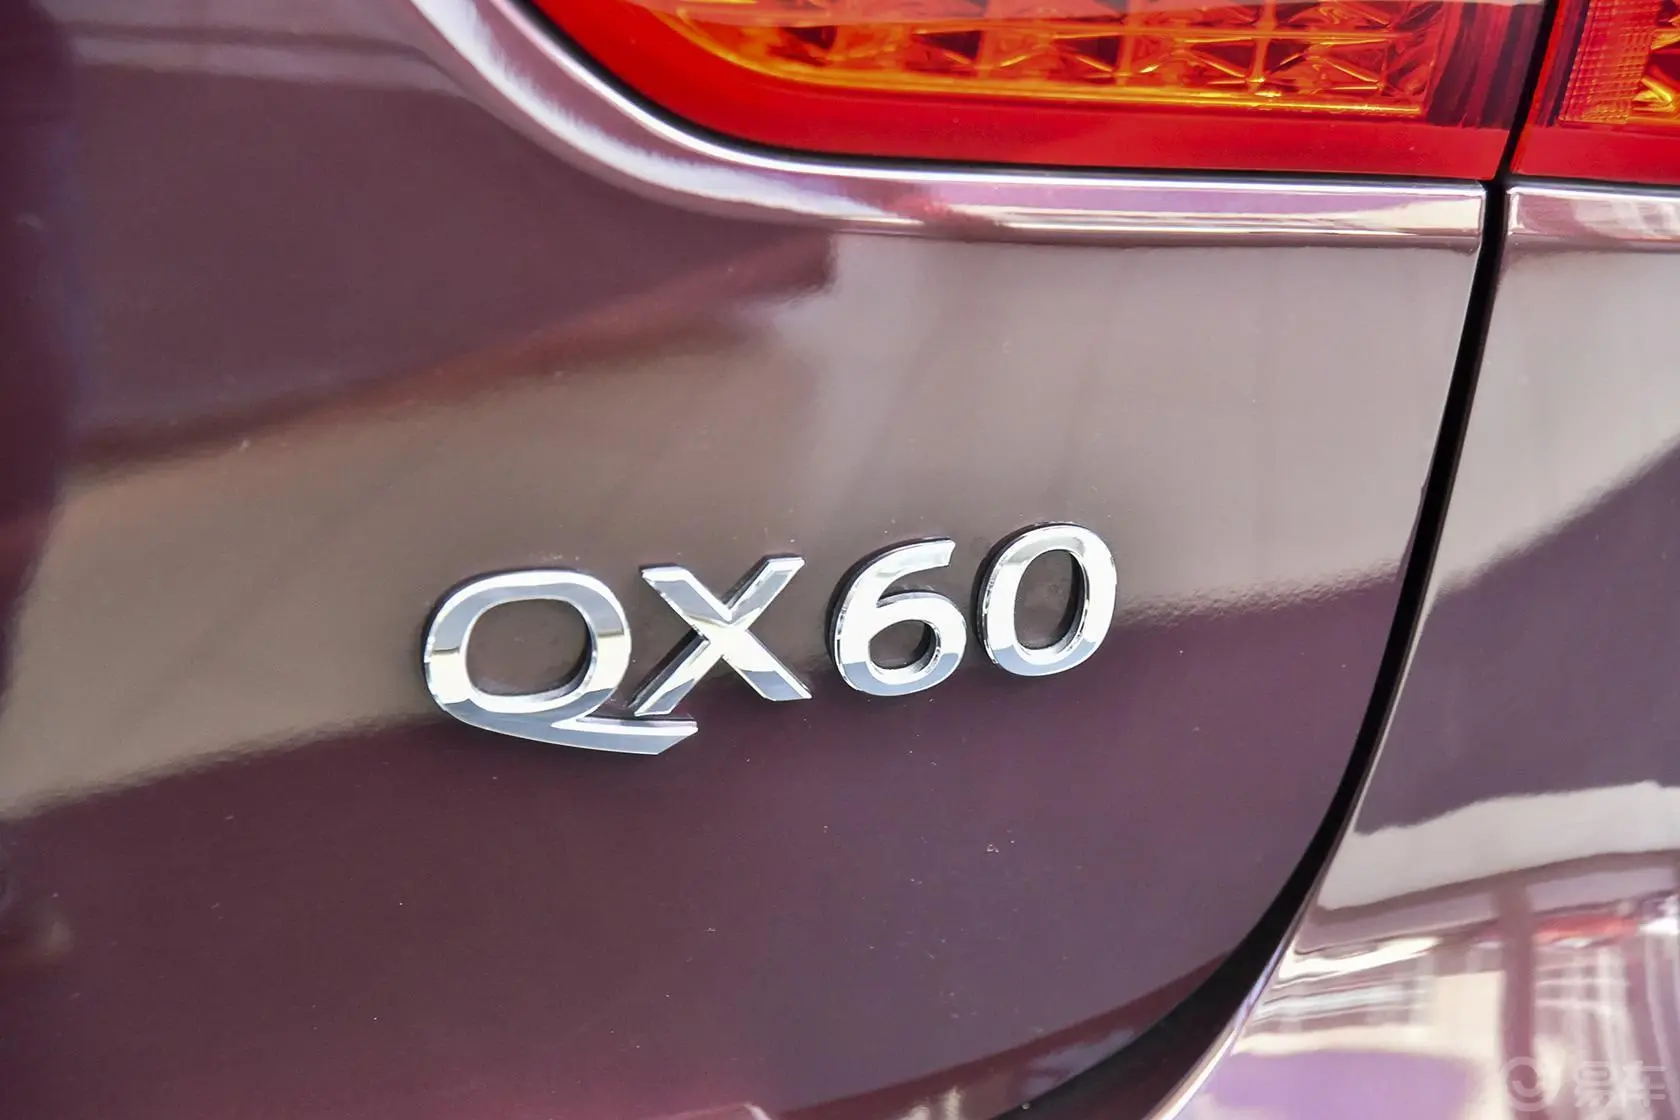 英菲尼迪QX60(进口)2.5 S/C Hybrid卓越版尾标